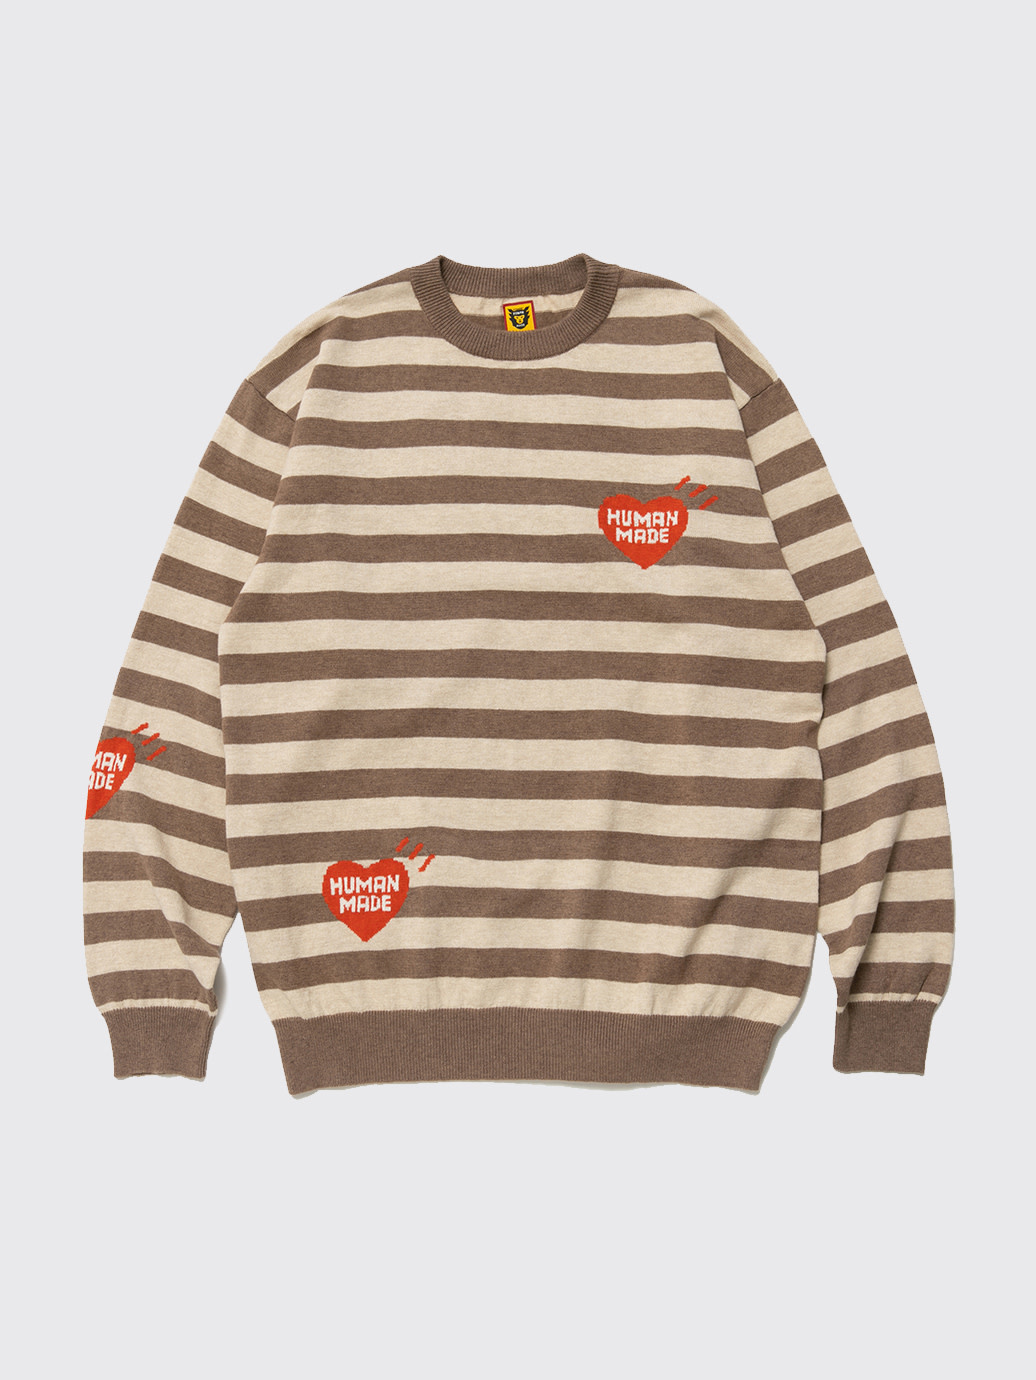 Human Made Striped L/S Knit Sweater FW22 Beige - OALLERY